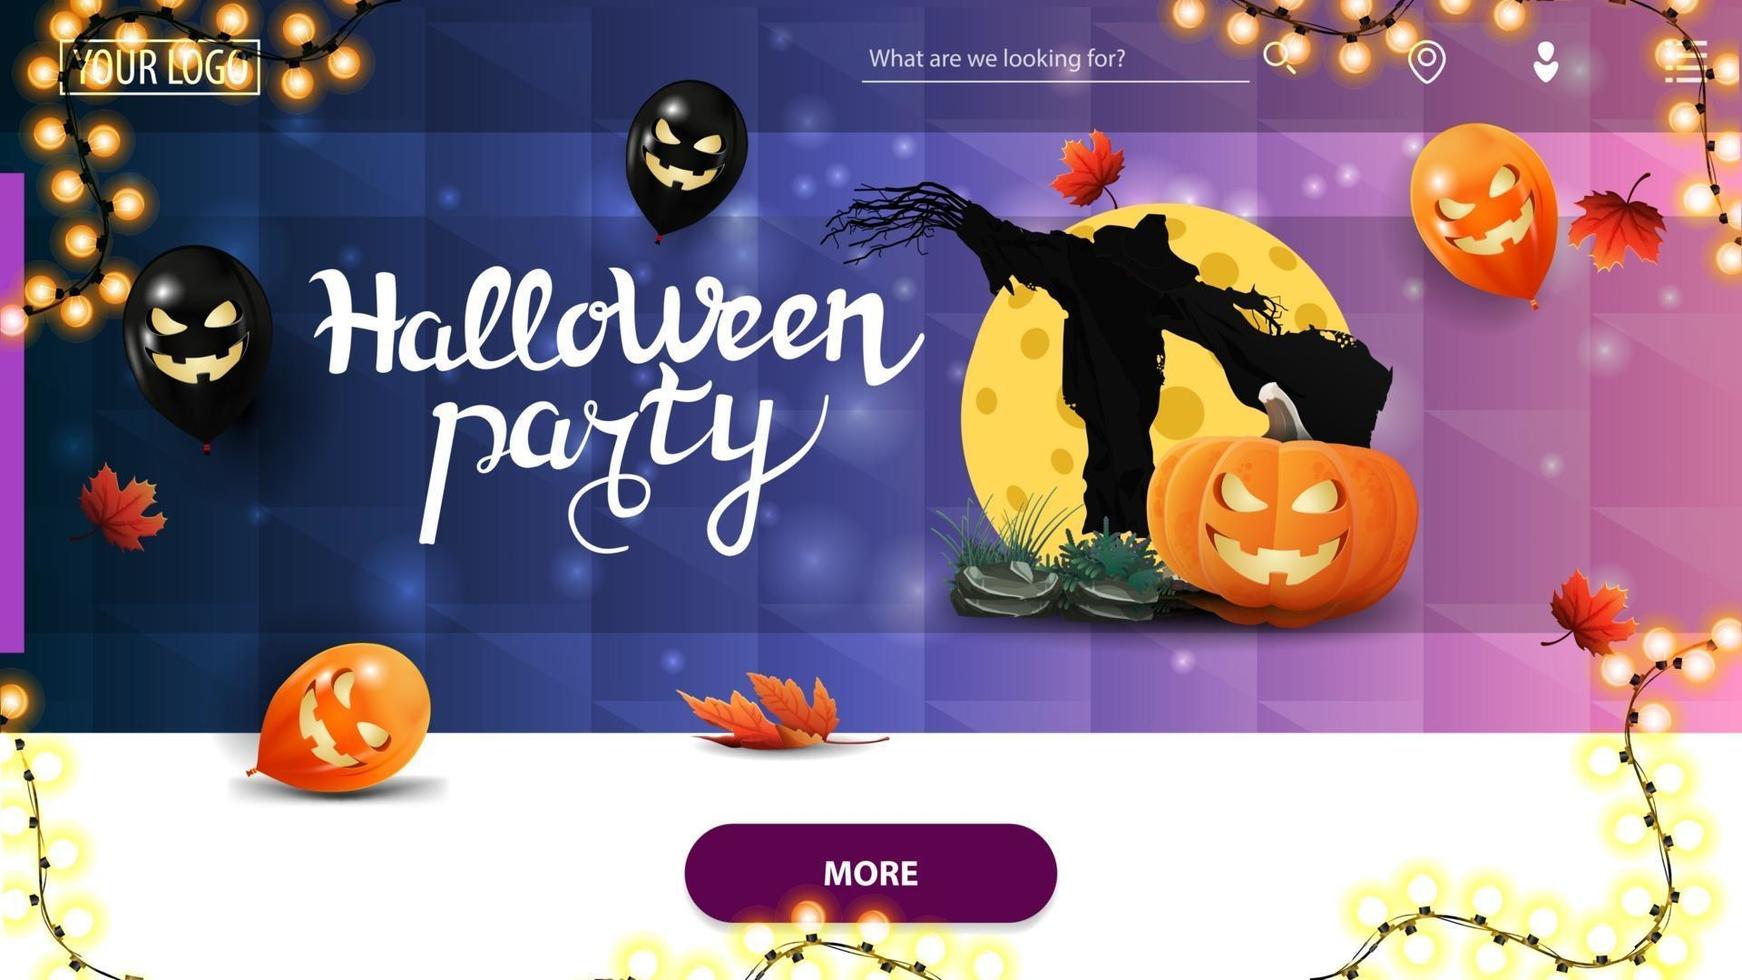 Halloween-feest, horizontale uitnodigingsbanner voor homepage-website met blauwe veelhoekige textuur, halloween-ballonnen, vogelverschrikker en pompoenhefboom tegen de maan vector